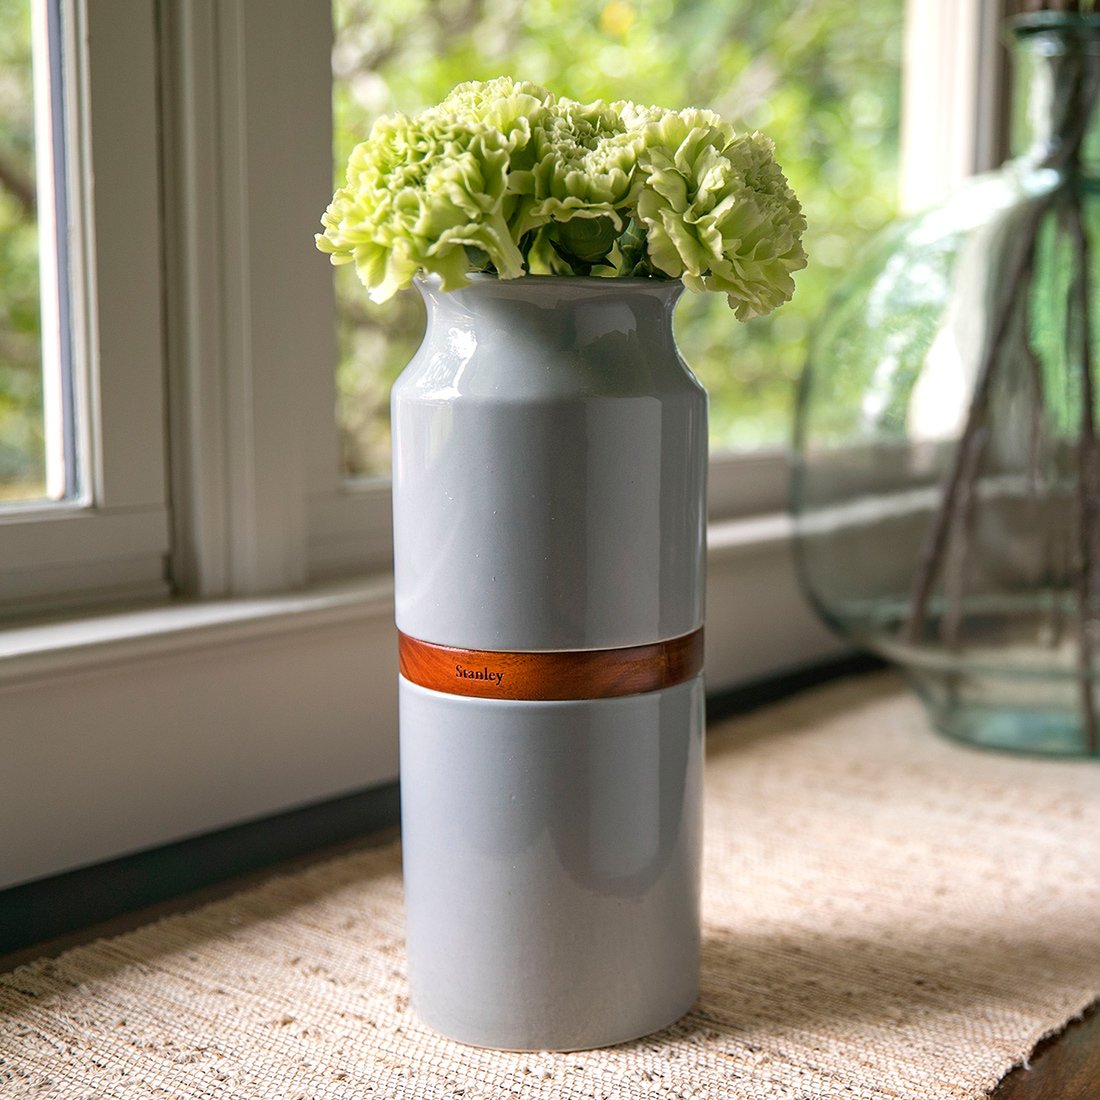 The Vega Vase Urn in Grey